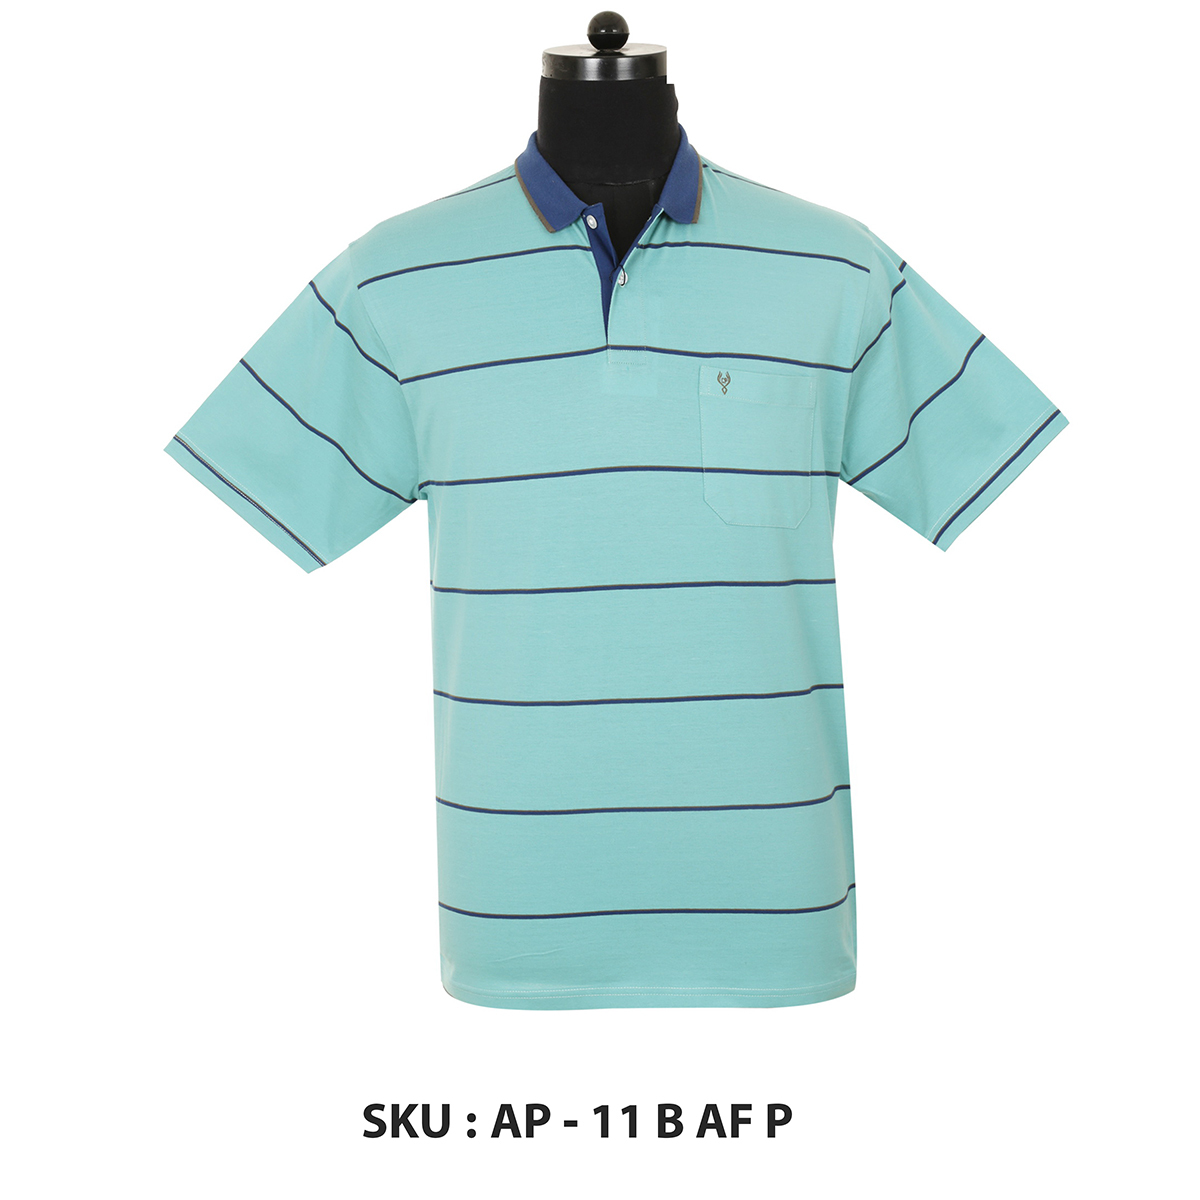 Classic Polo Mens T Shirt Ap - 11 B Af P Aqua L